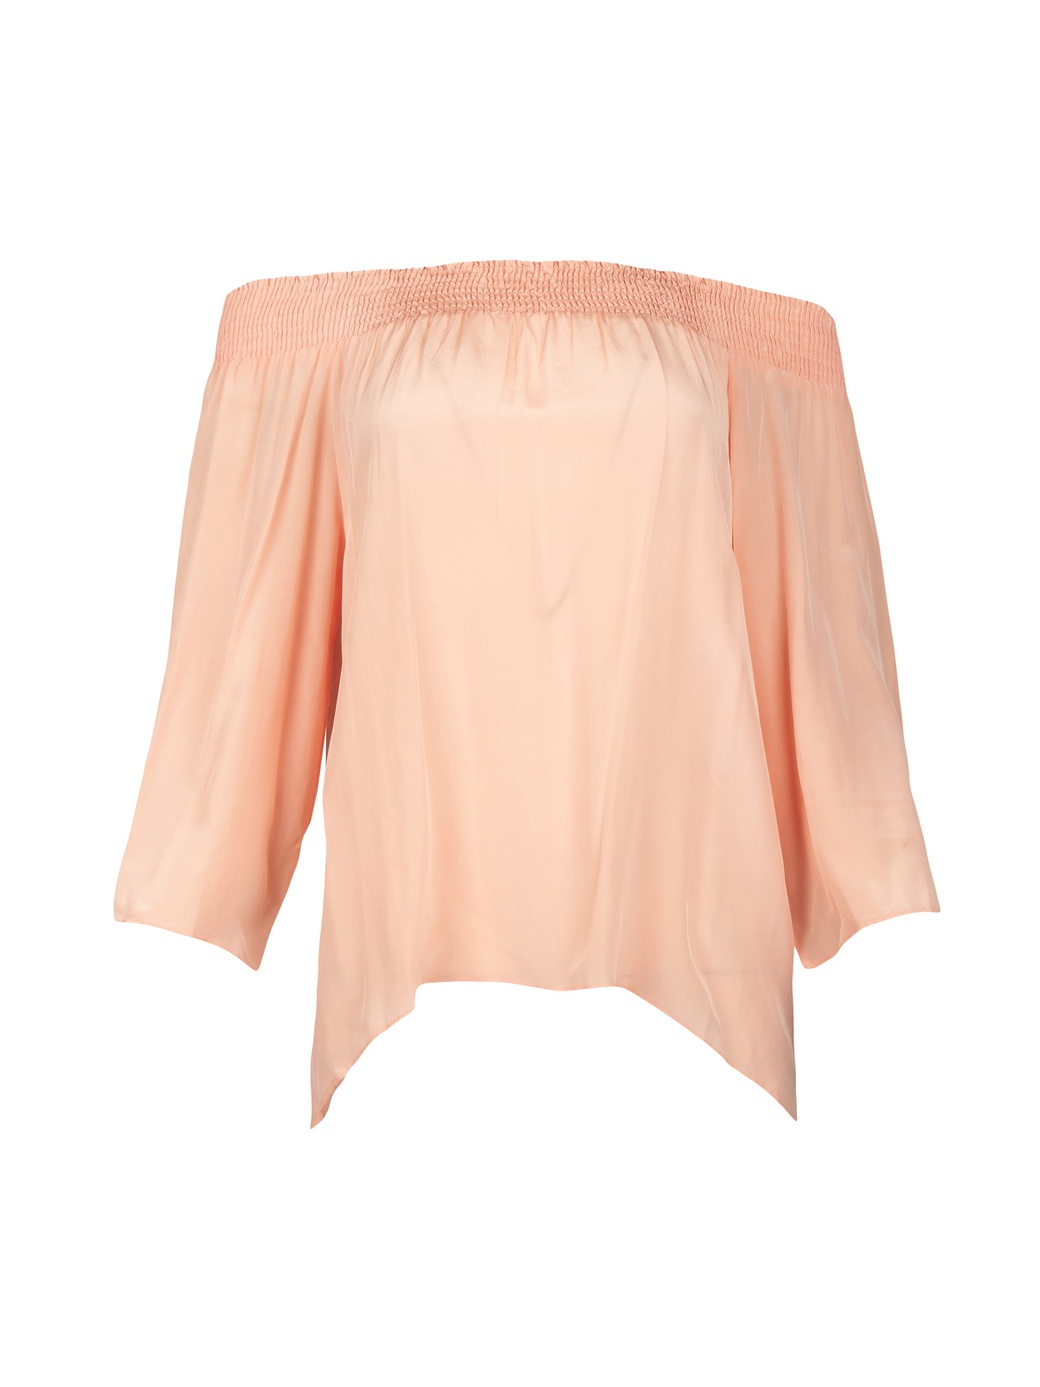 Блуза Walter Baker 149622, светло-персиковый фото